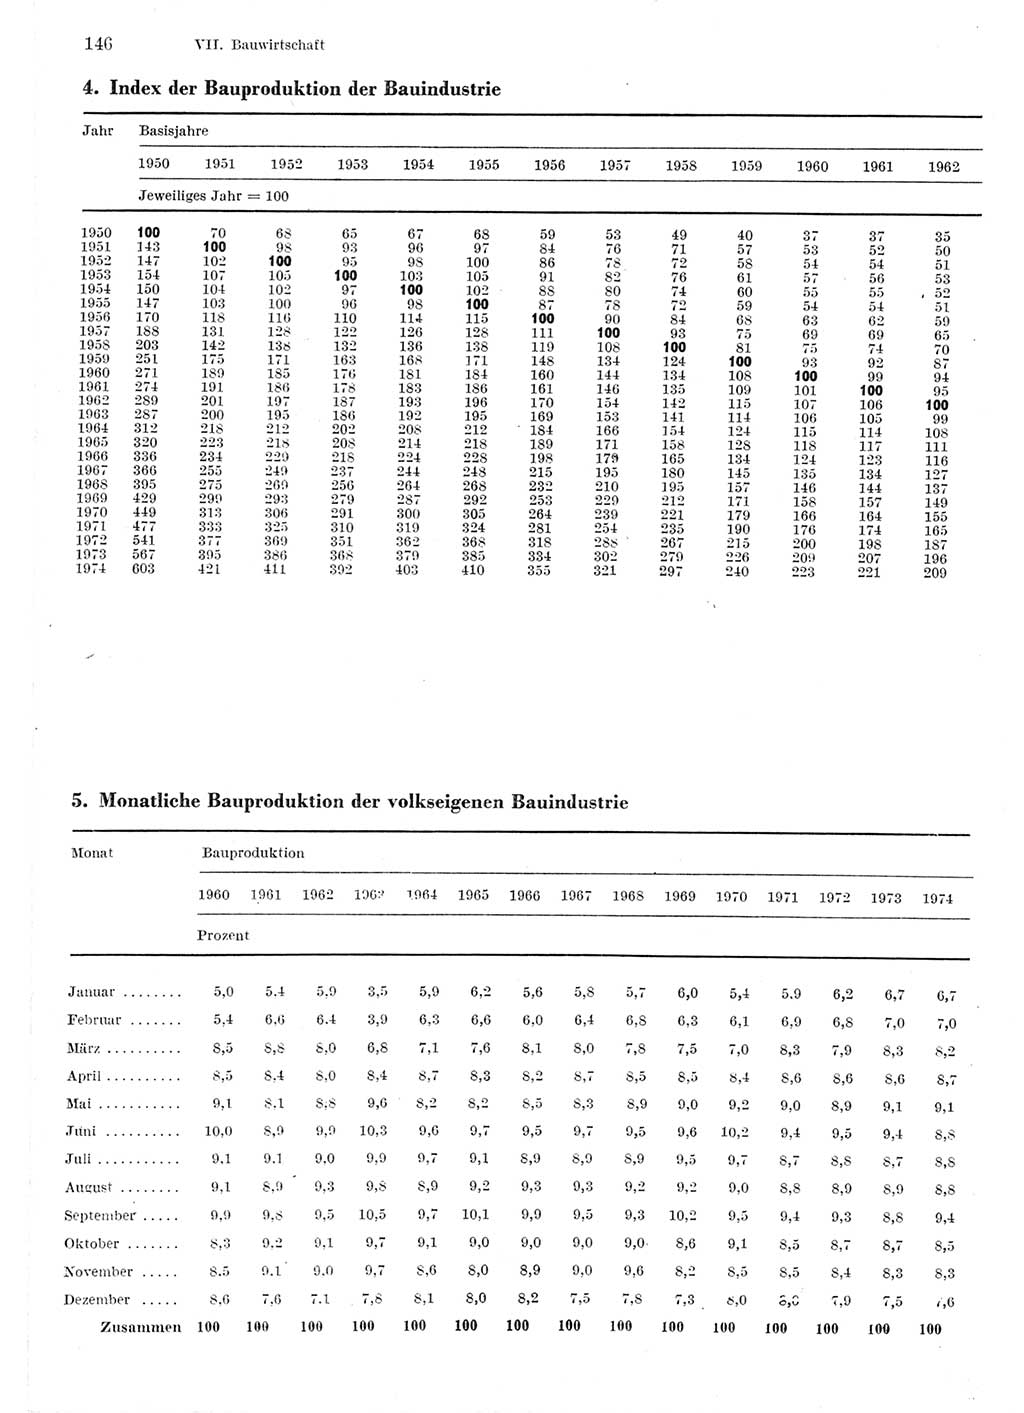 Statistisches Jahrbuch der Deutschen Demokratischen Republik (DDR) 1975, Seite 146 (Stat. Jb. DDR 1975, S. 146)